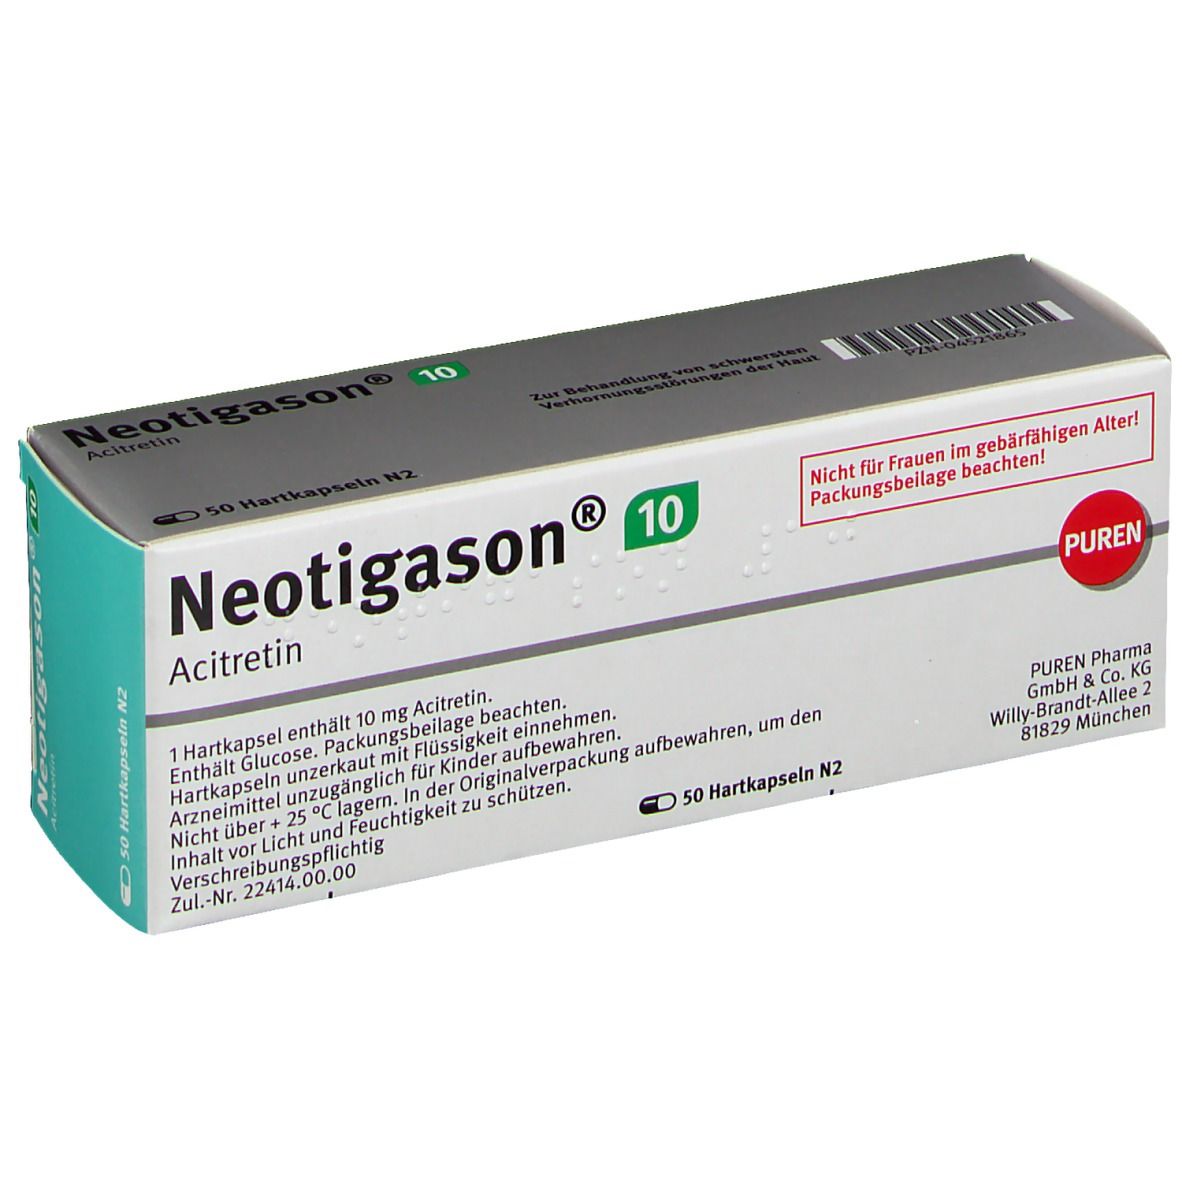 Neotigason® 10